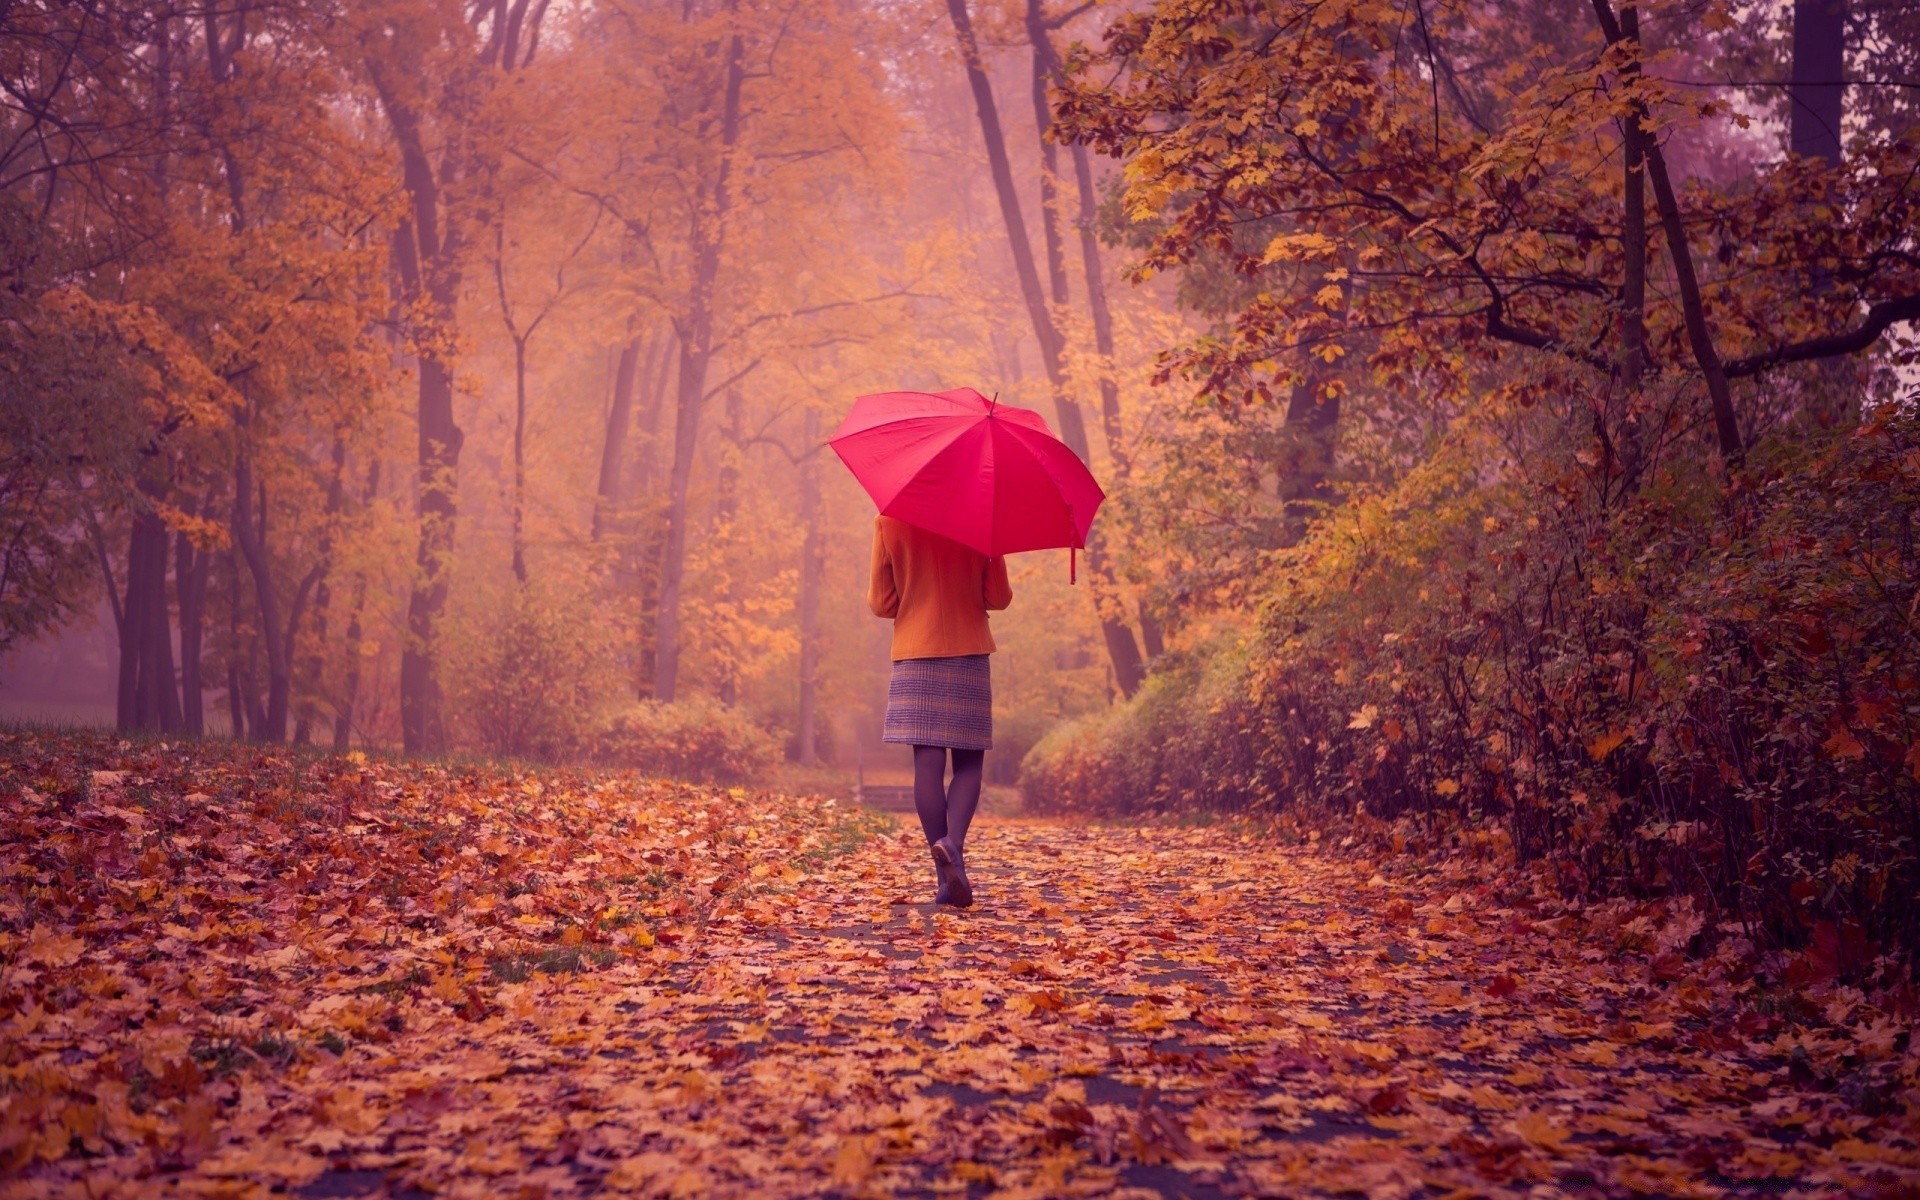 осень осень зонтик дерево на открытом воздухе один взрослый женщина древесины погода пейзаж девушка рассвет дождь природа свет